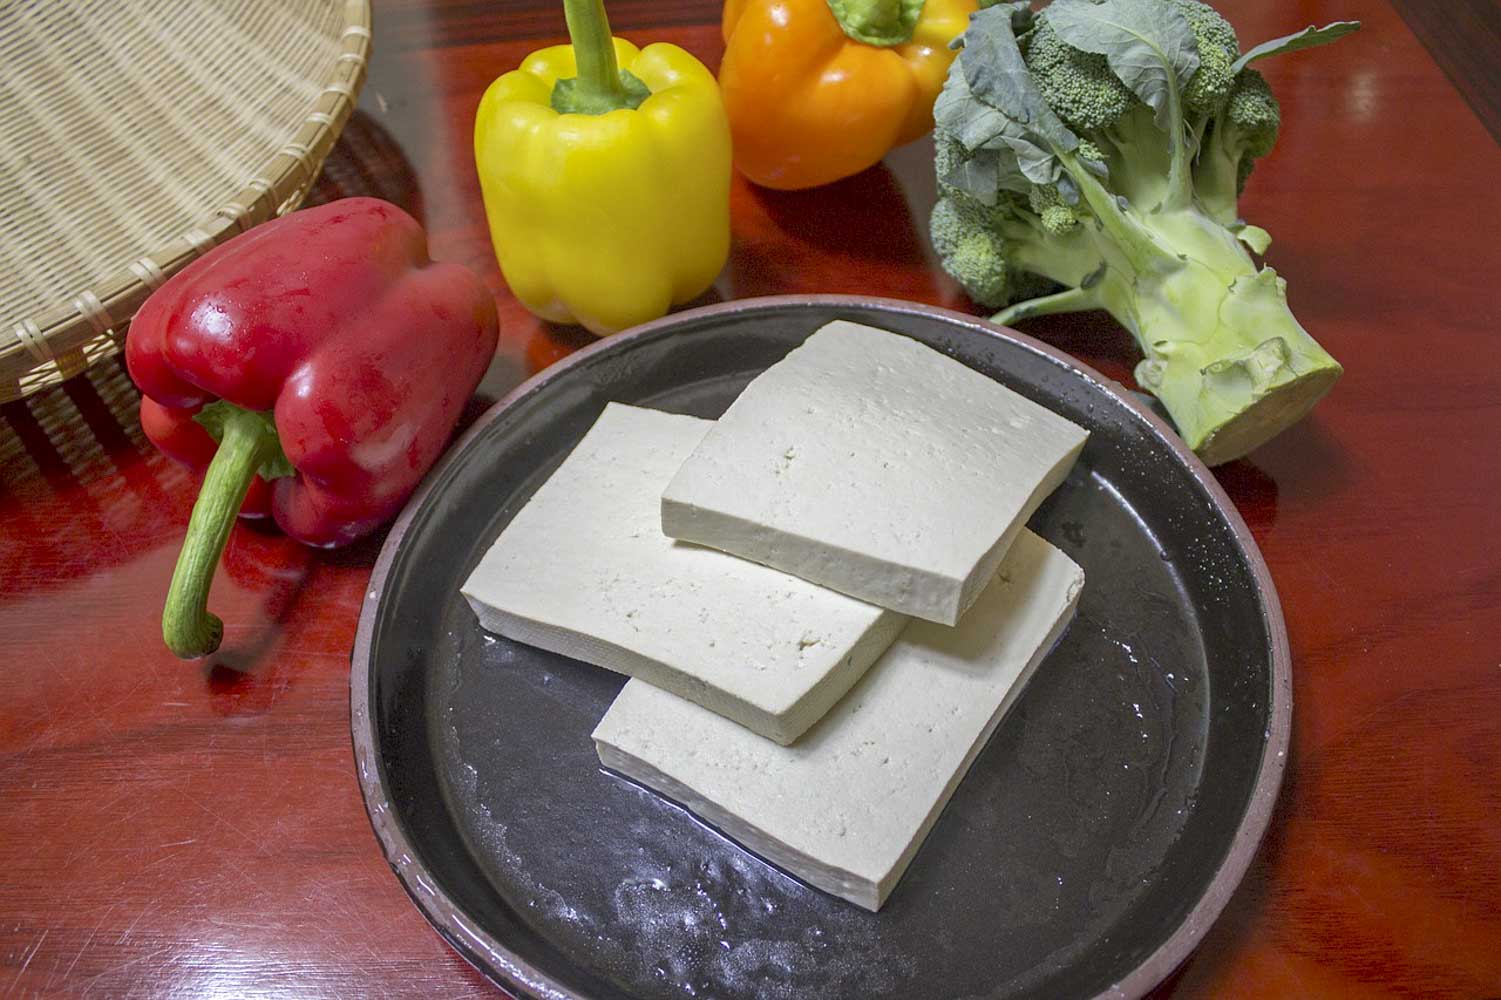 Co to jest tofu? Wartości odżywcze i skąd jest tofu?